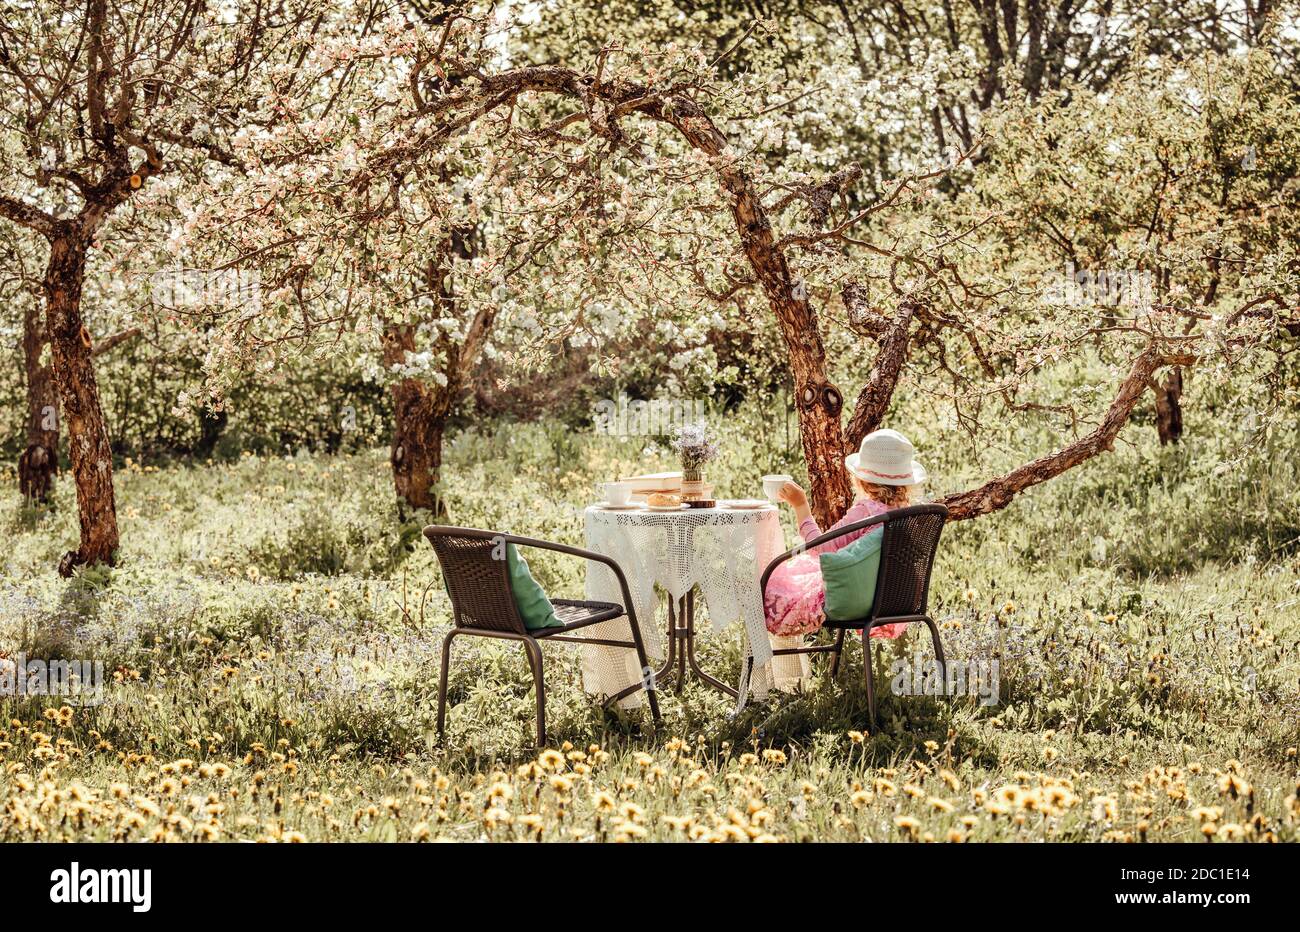 fille de 6 ans en robe d'été rose s'asseoir sur la chaise de jardin près de la table de jardin, sous les pommiers en fleurs le jour ensoleillé du printemps. Photo moderne orange chaleureux. Banque D'Images